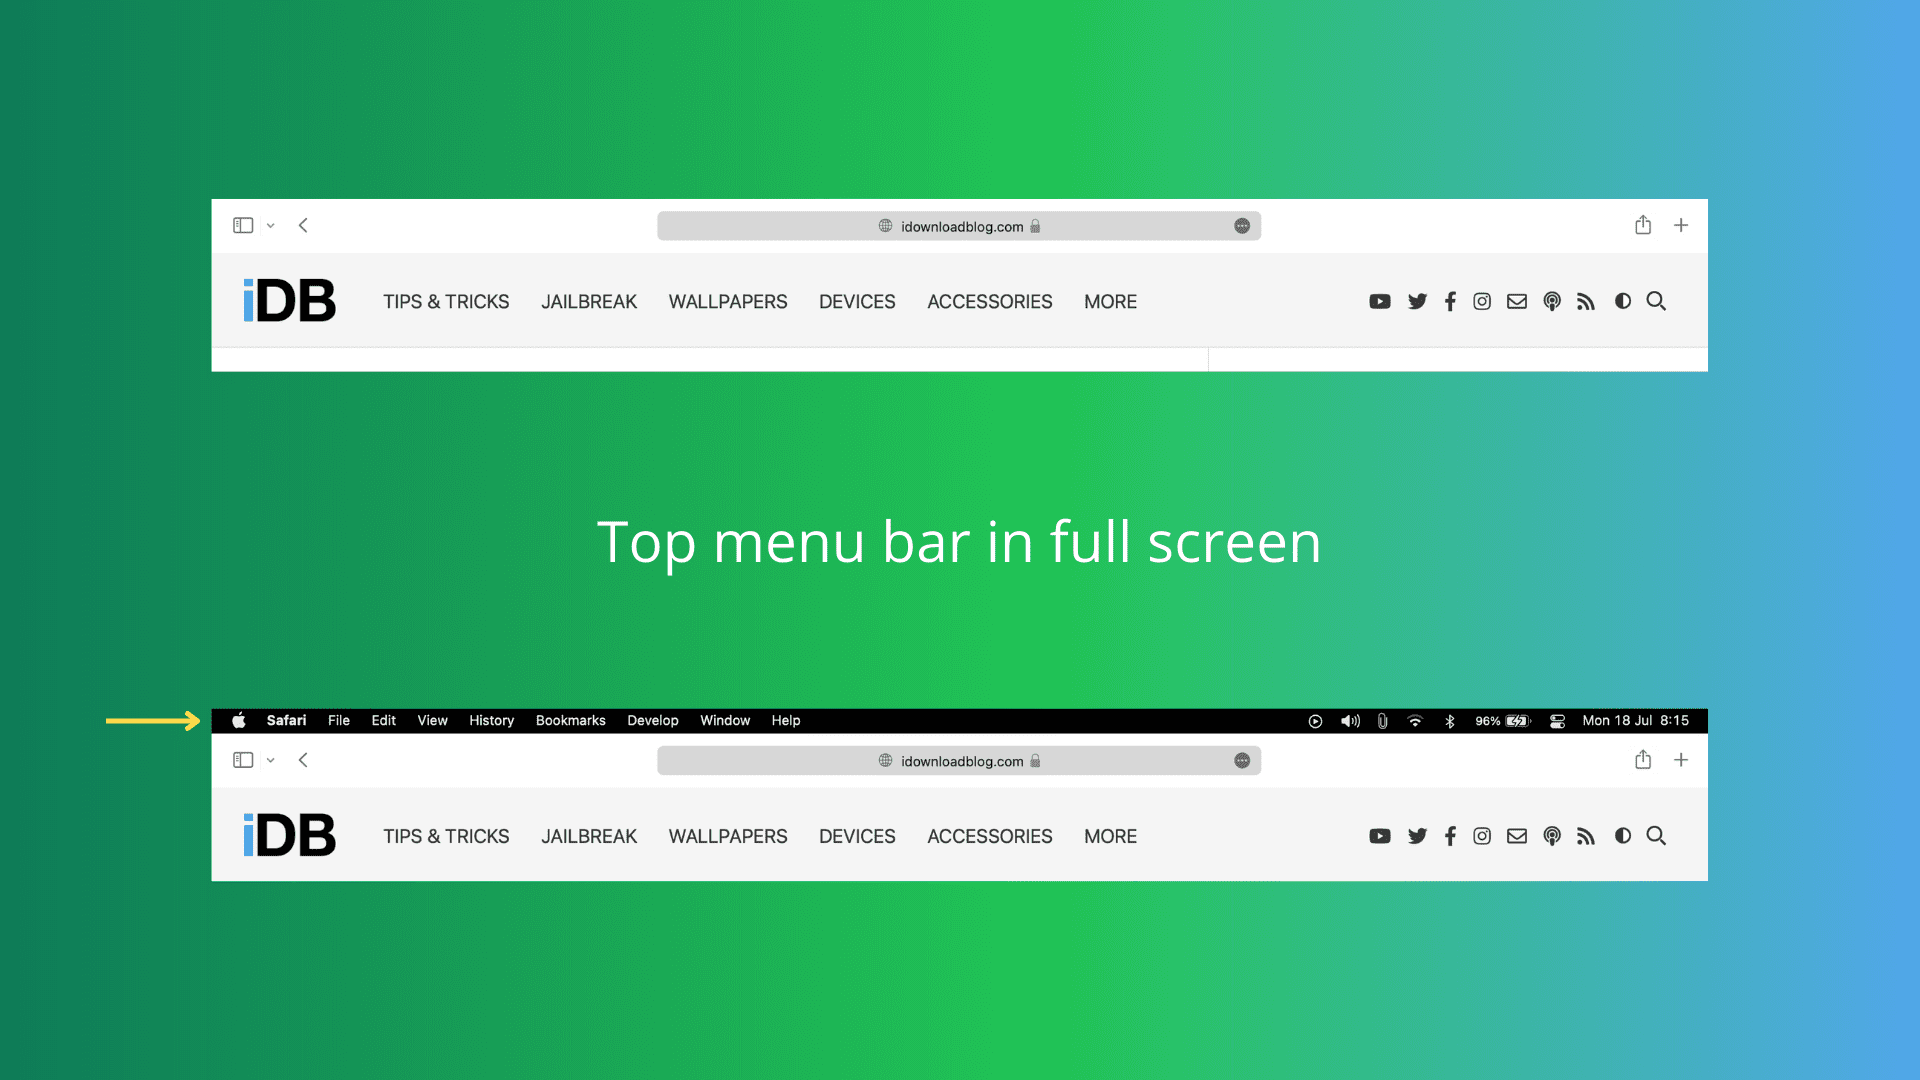 Afficher la barre de menus en mode plein écran sur Mac